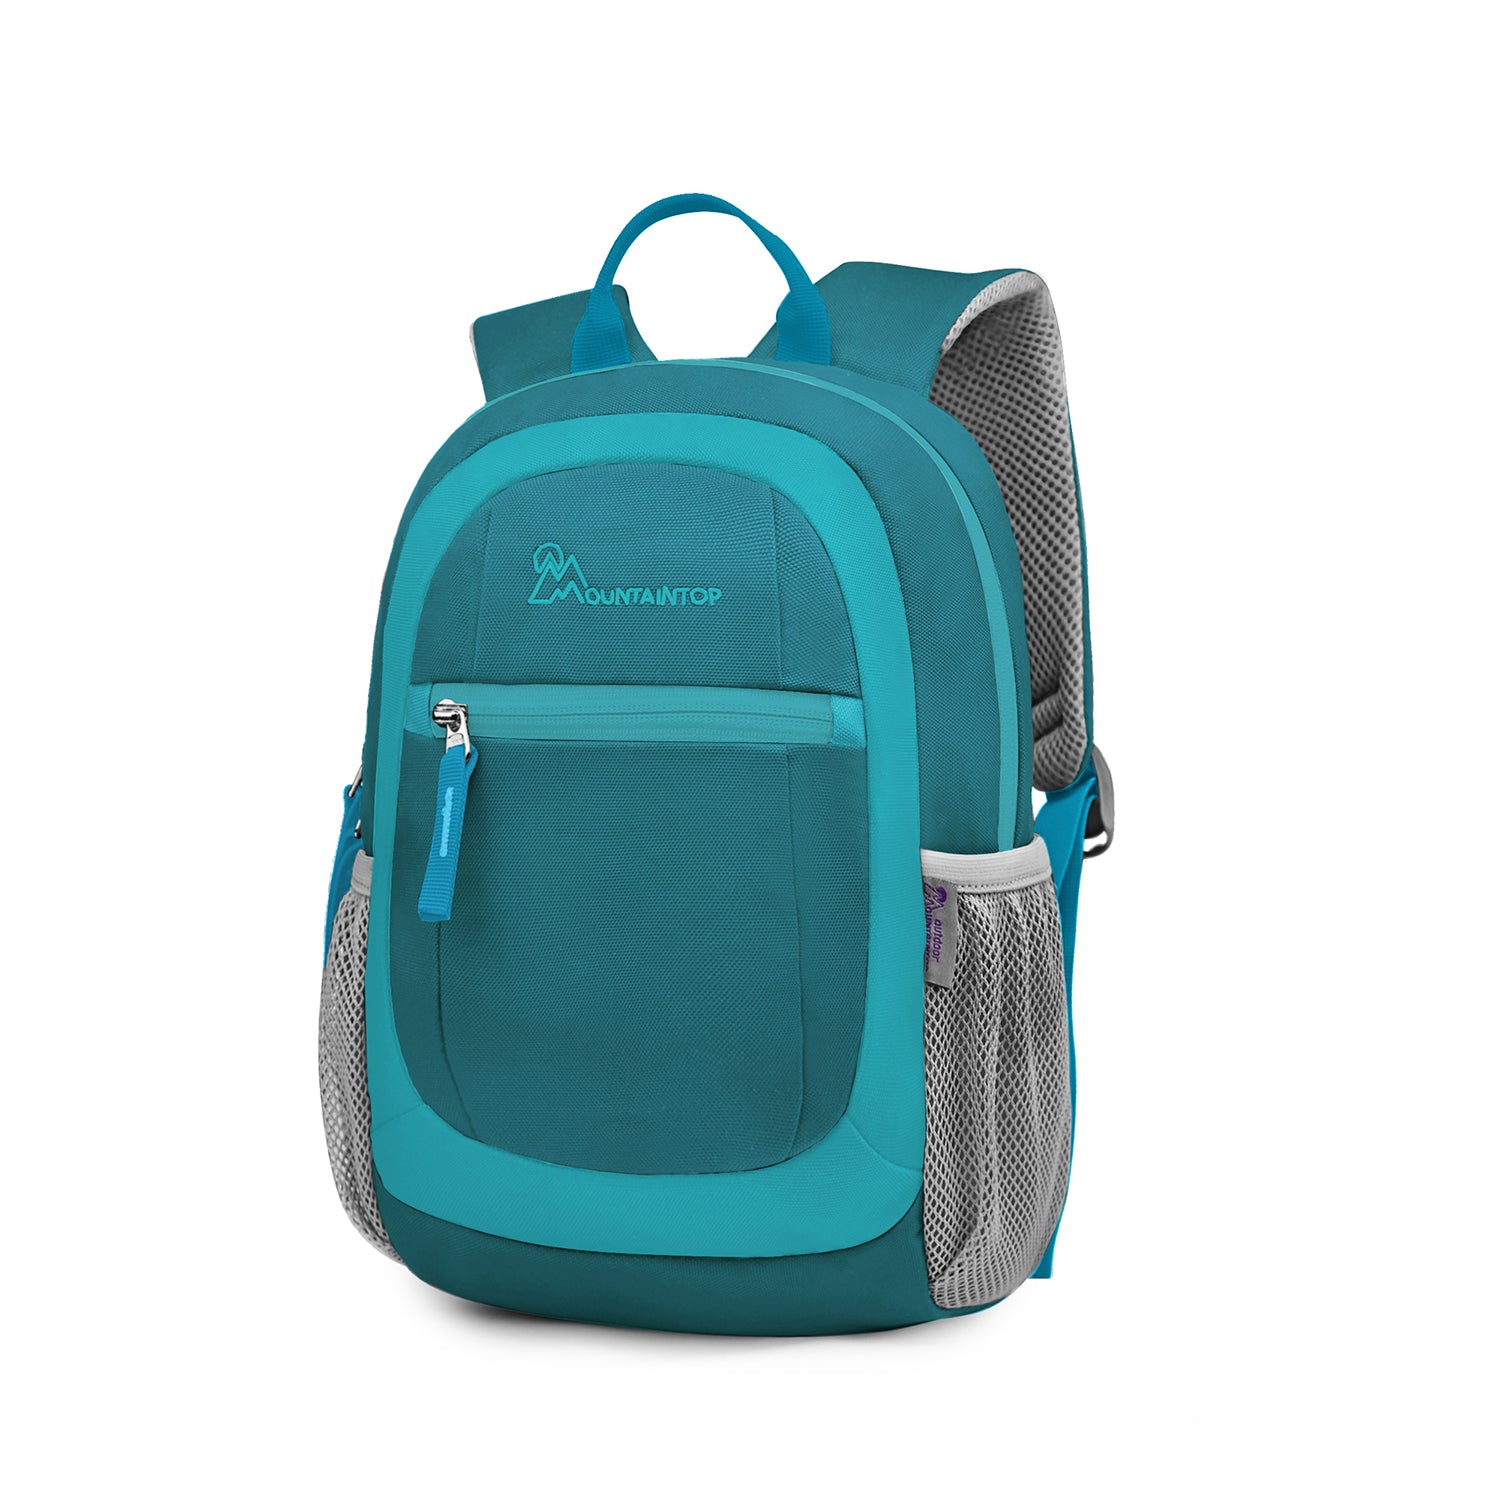 kids school backpacks,Elementary School Bookbag for Boys Girls